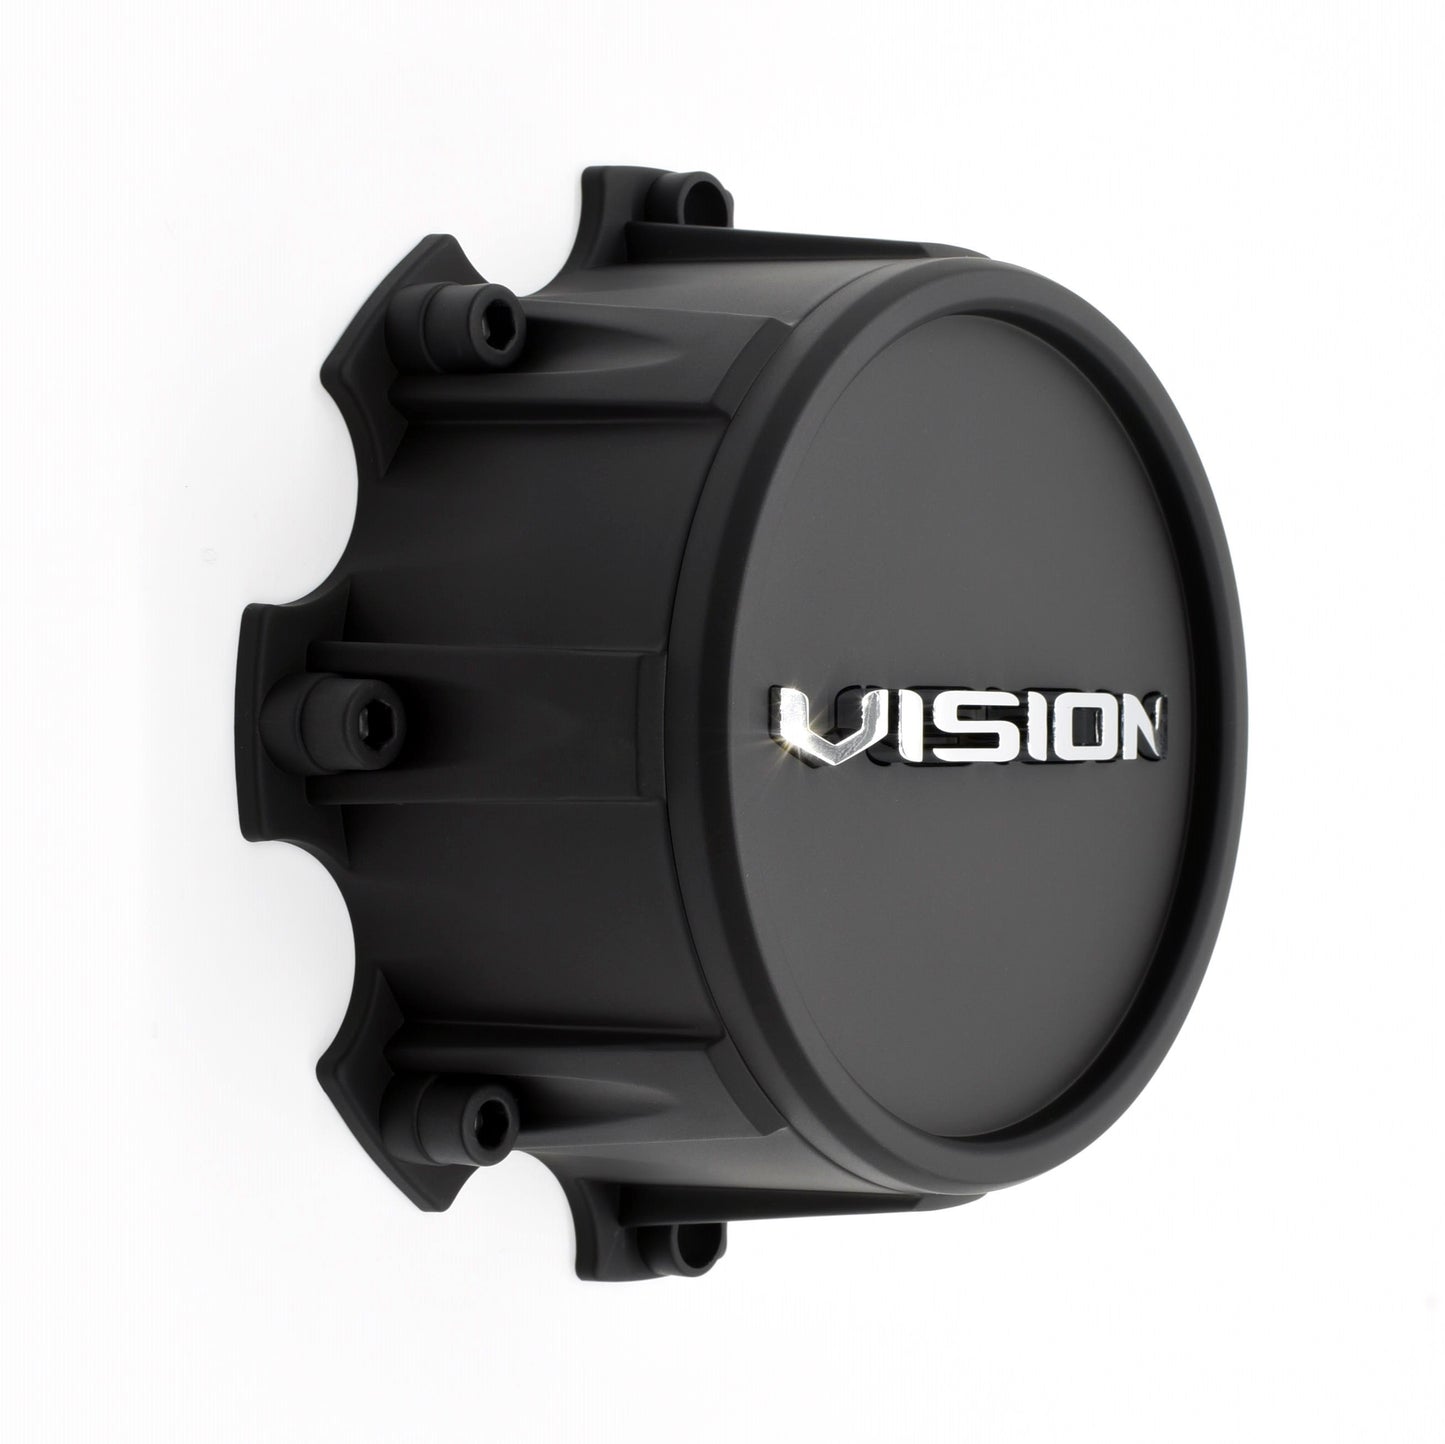 C421 Vision Wheel Cap